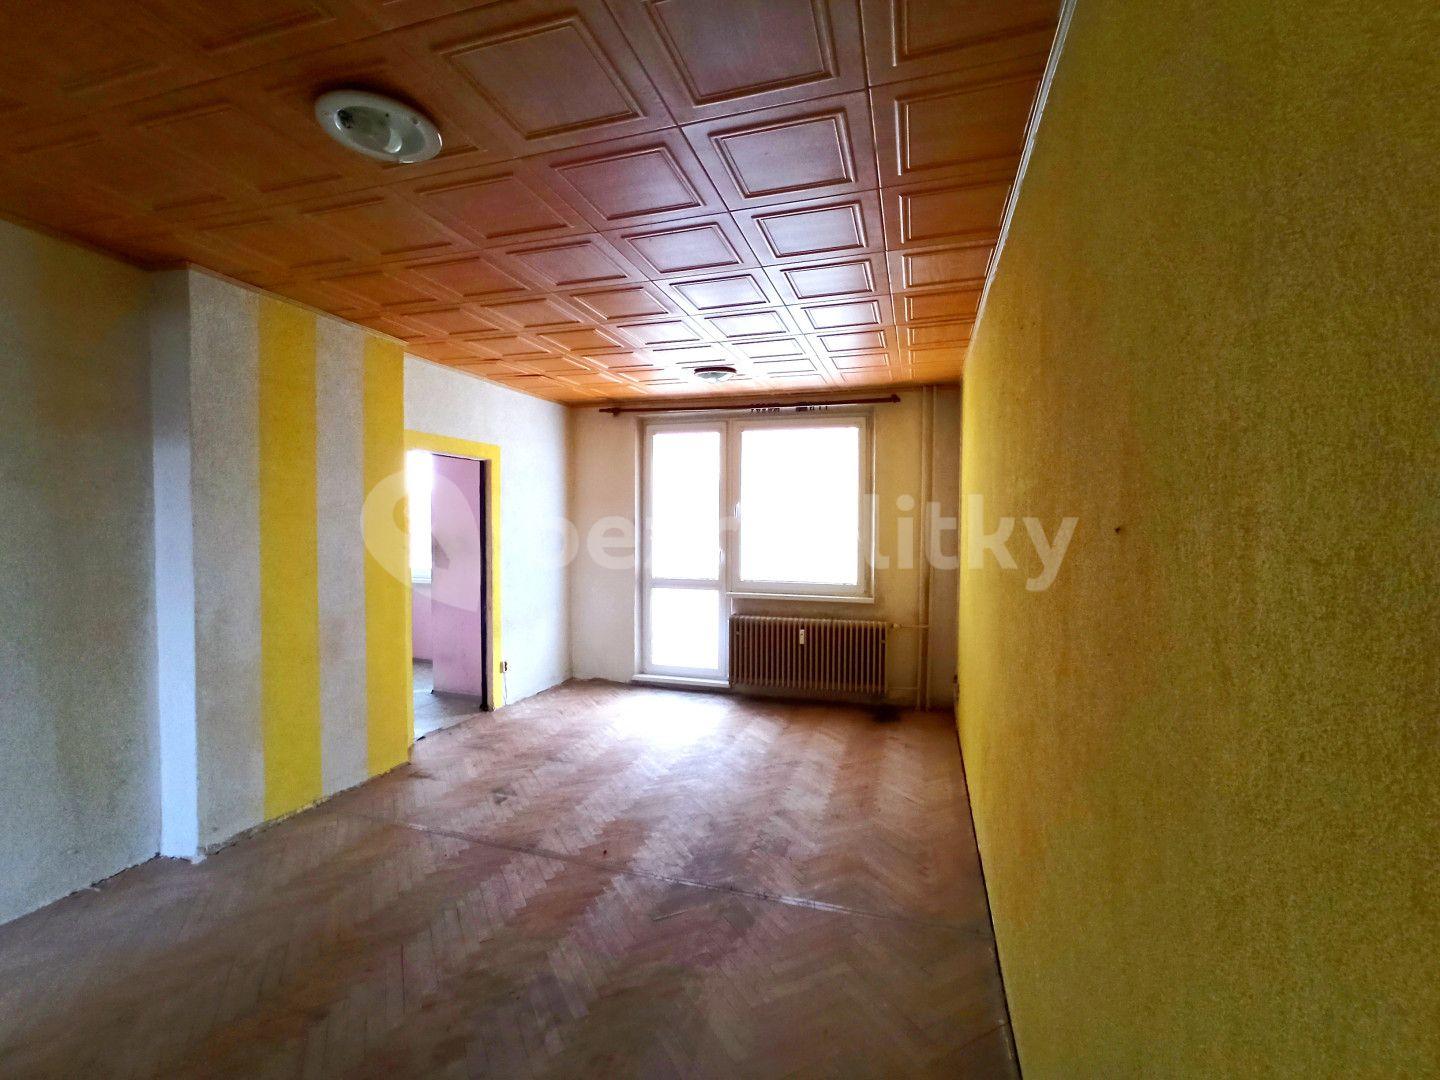 3 bedroom flat for sale, 66 m², Příční, Moravský Beroun, Olomoucký Region